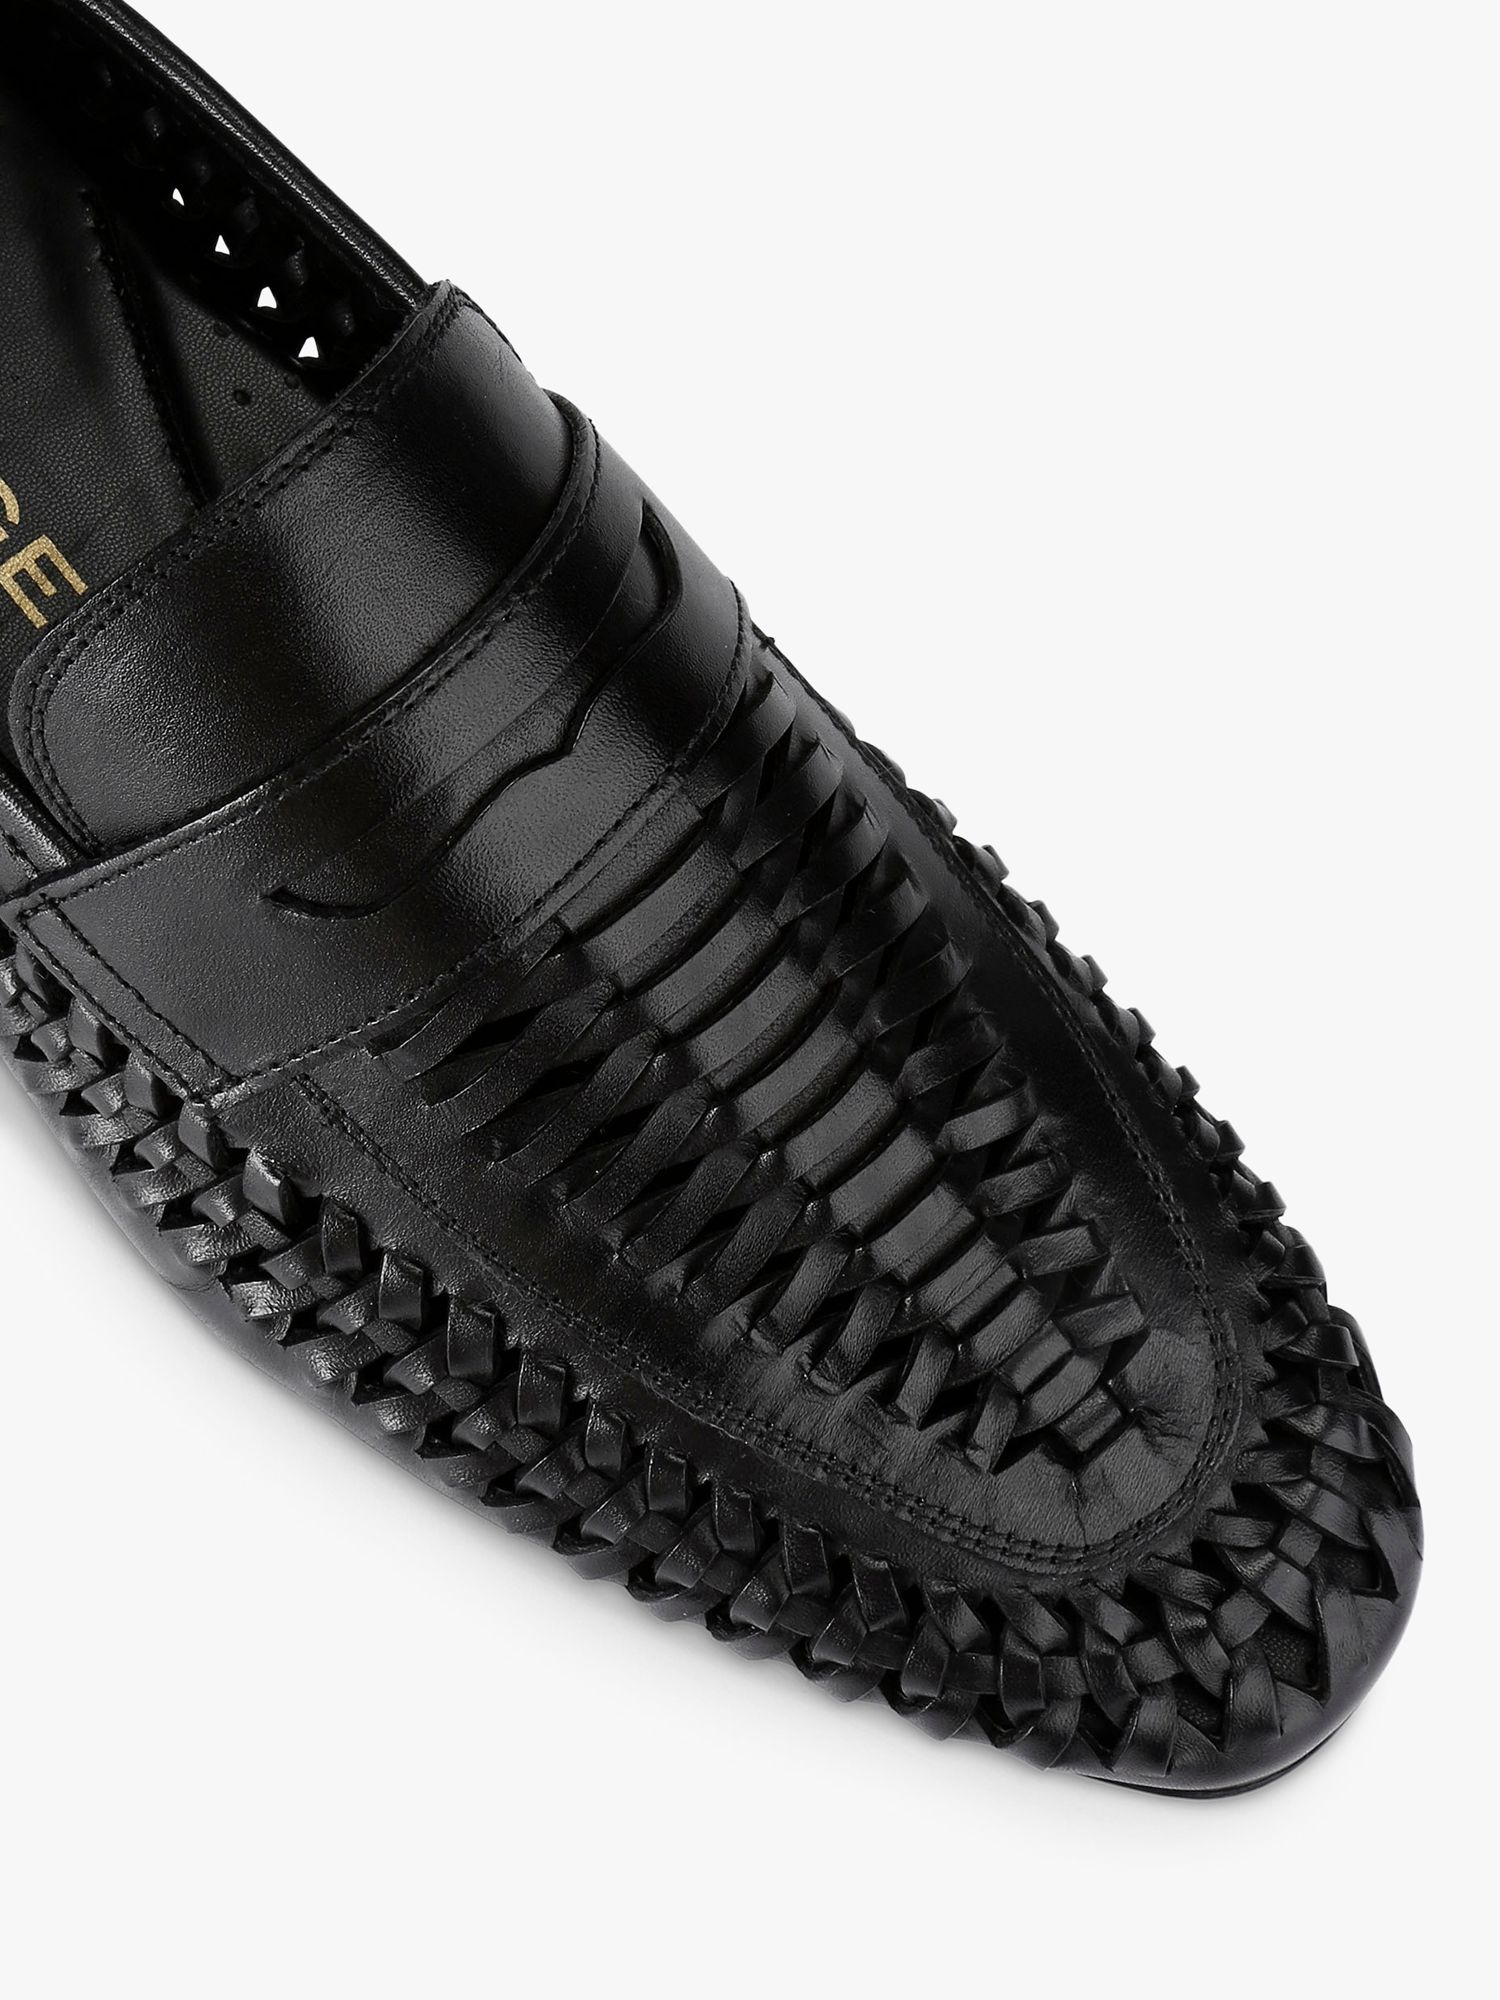 KG Kurt Geiger Fraser Leather Woven Loafers, Black, 6